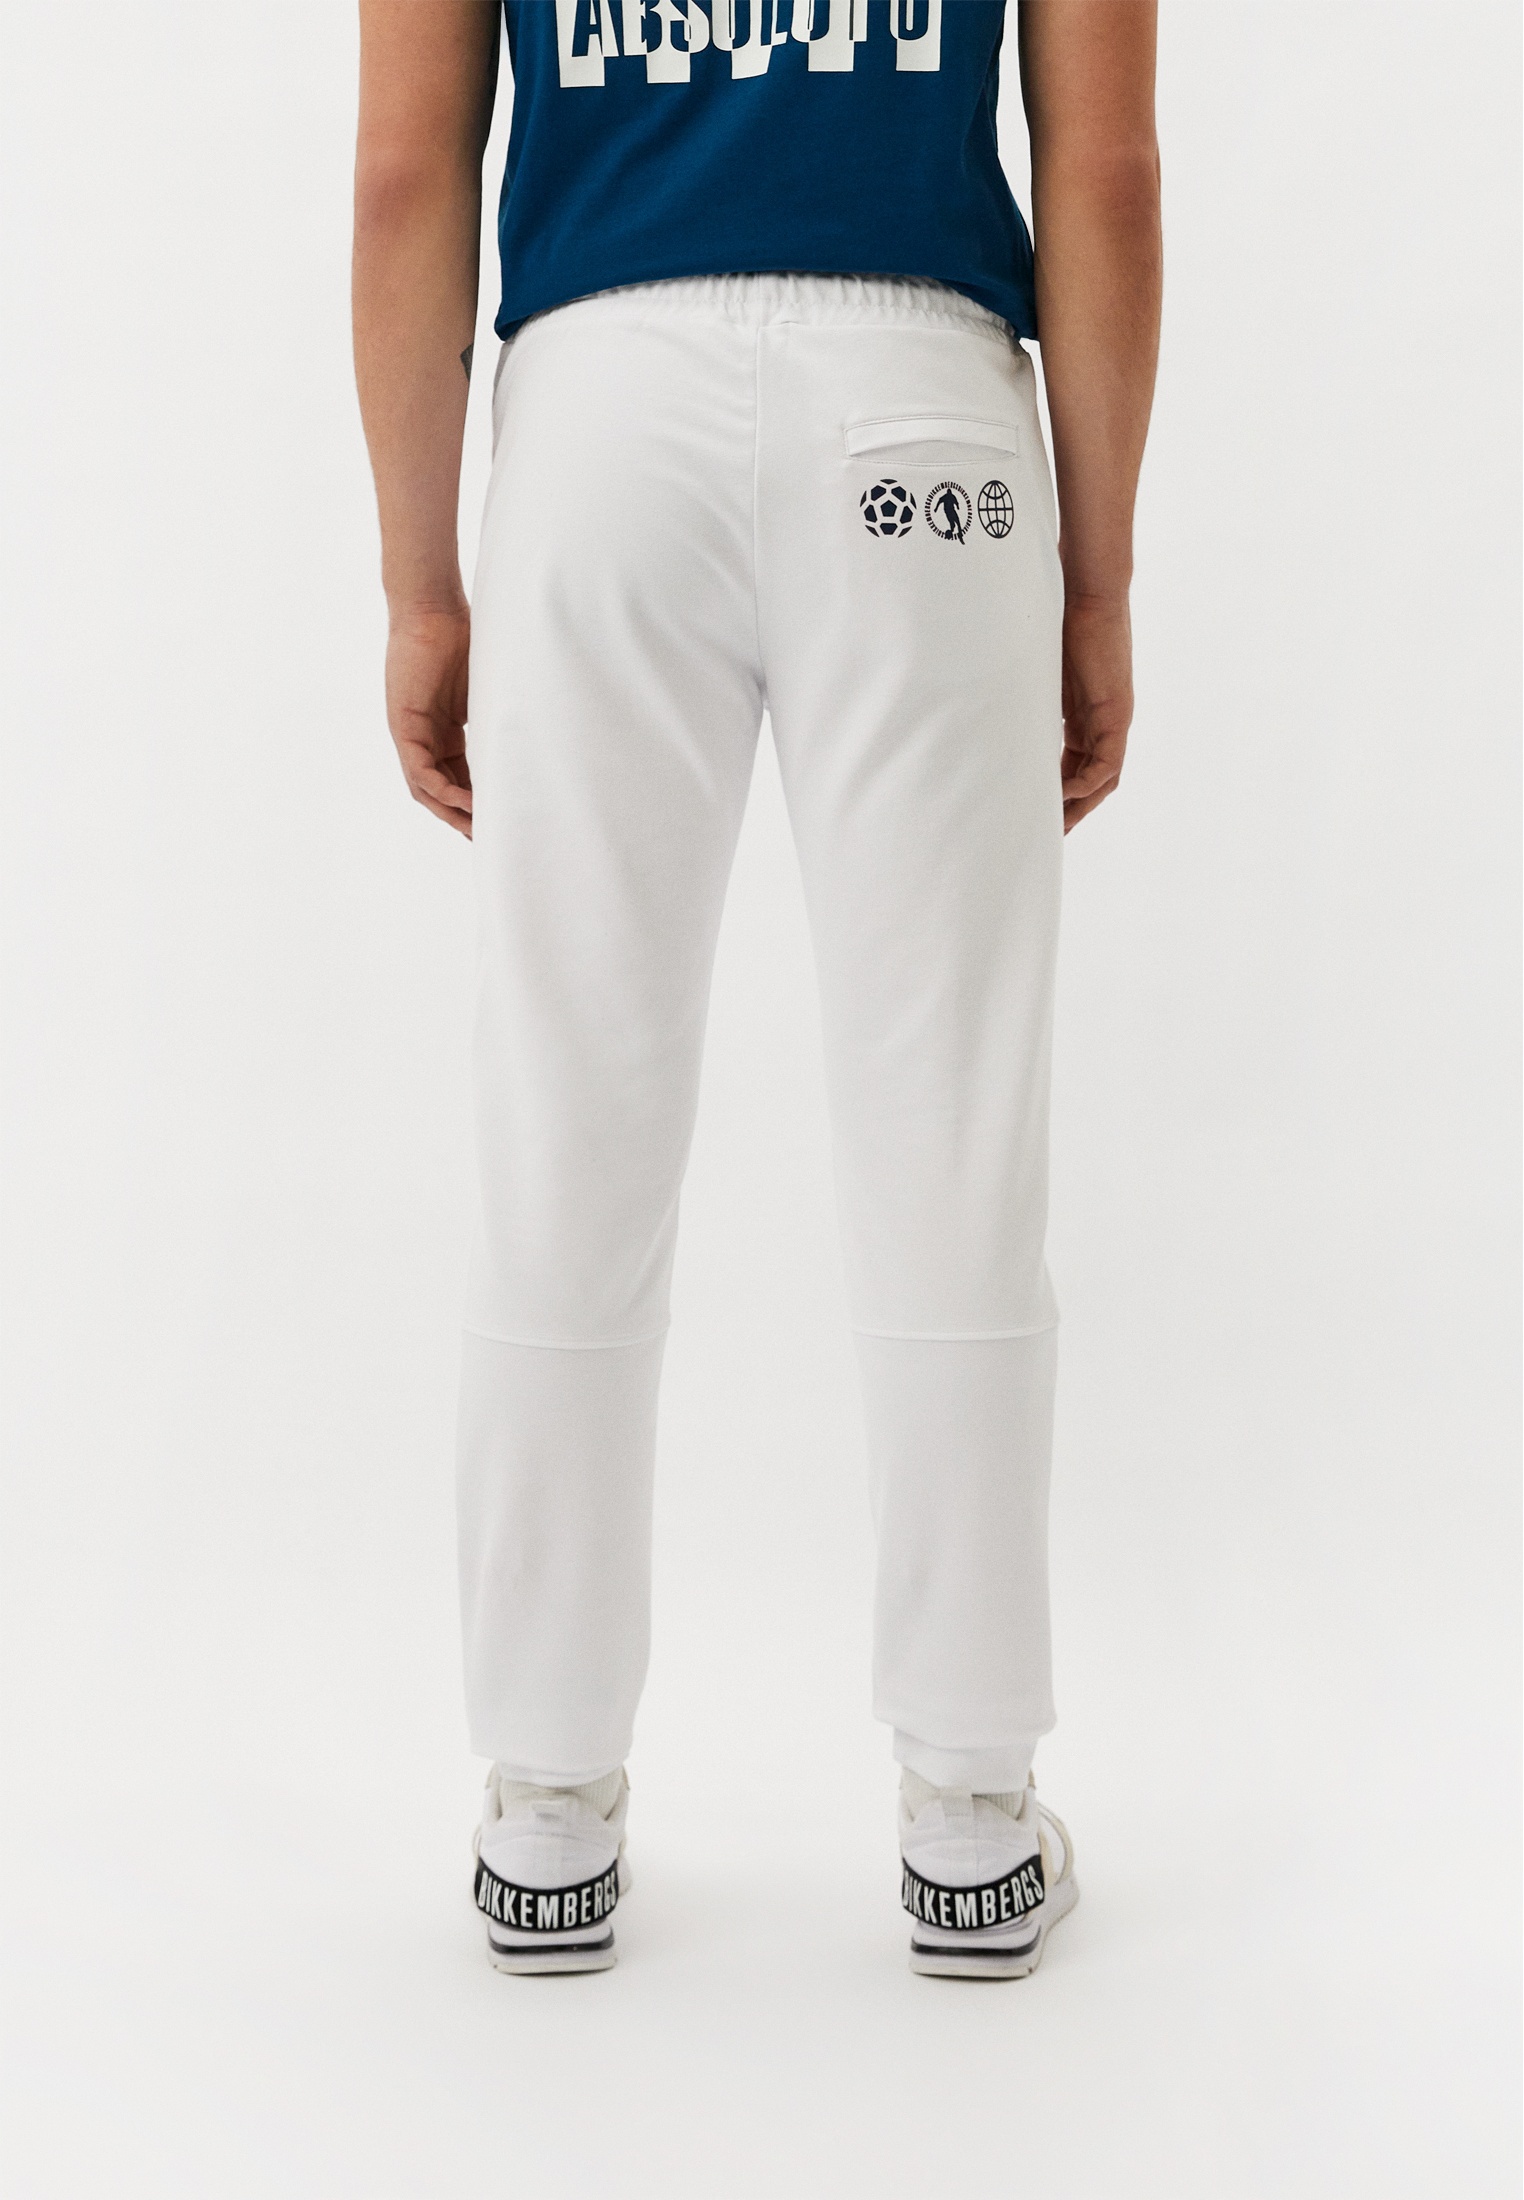 Мужские спортивные брюки Bikkembergs (Биккембергс) C128501E2414: изображение 3